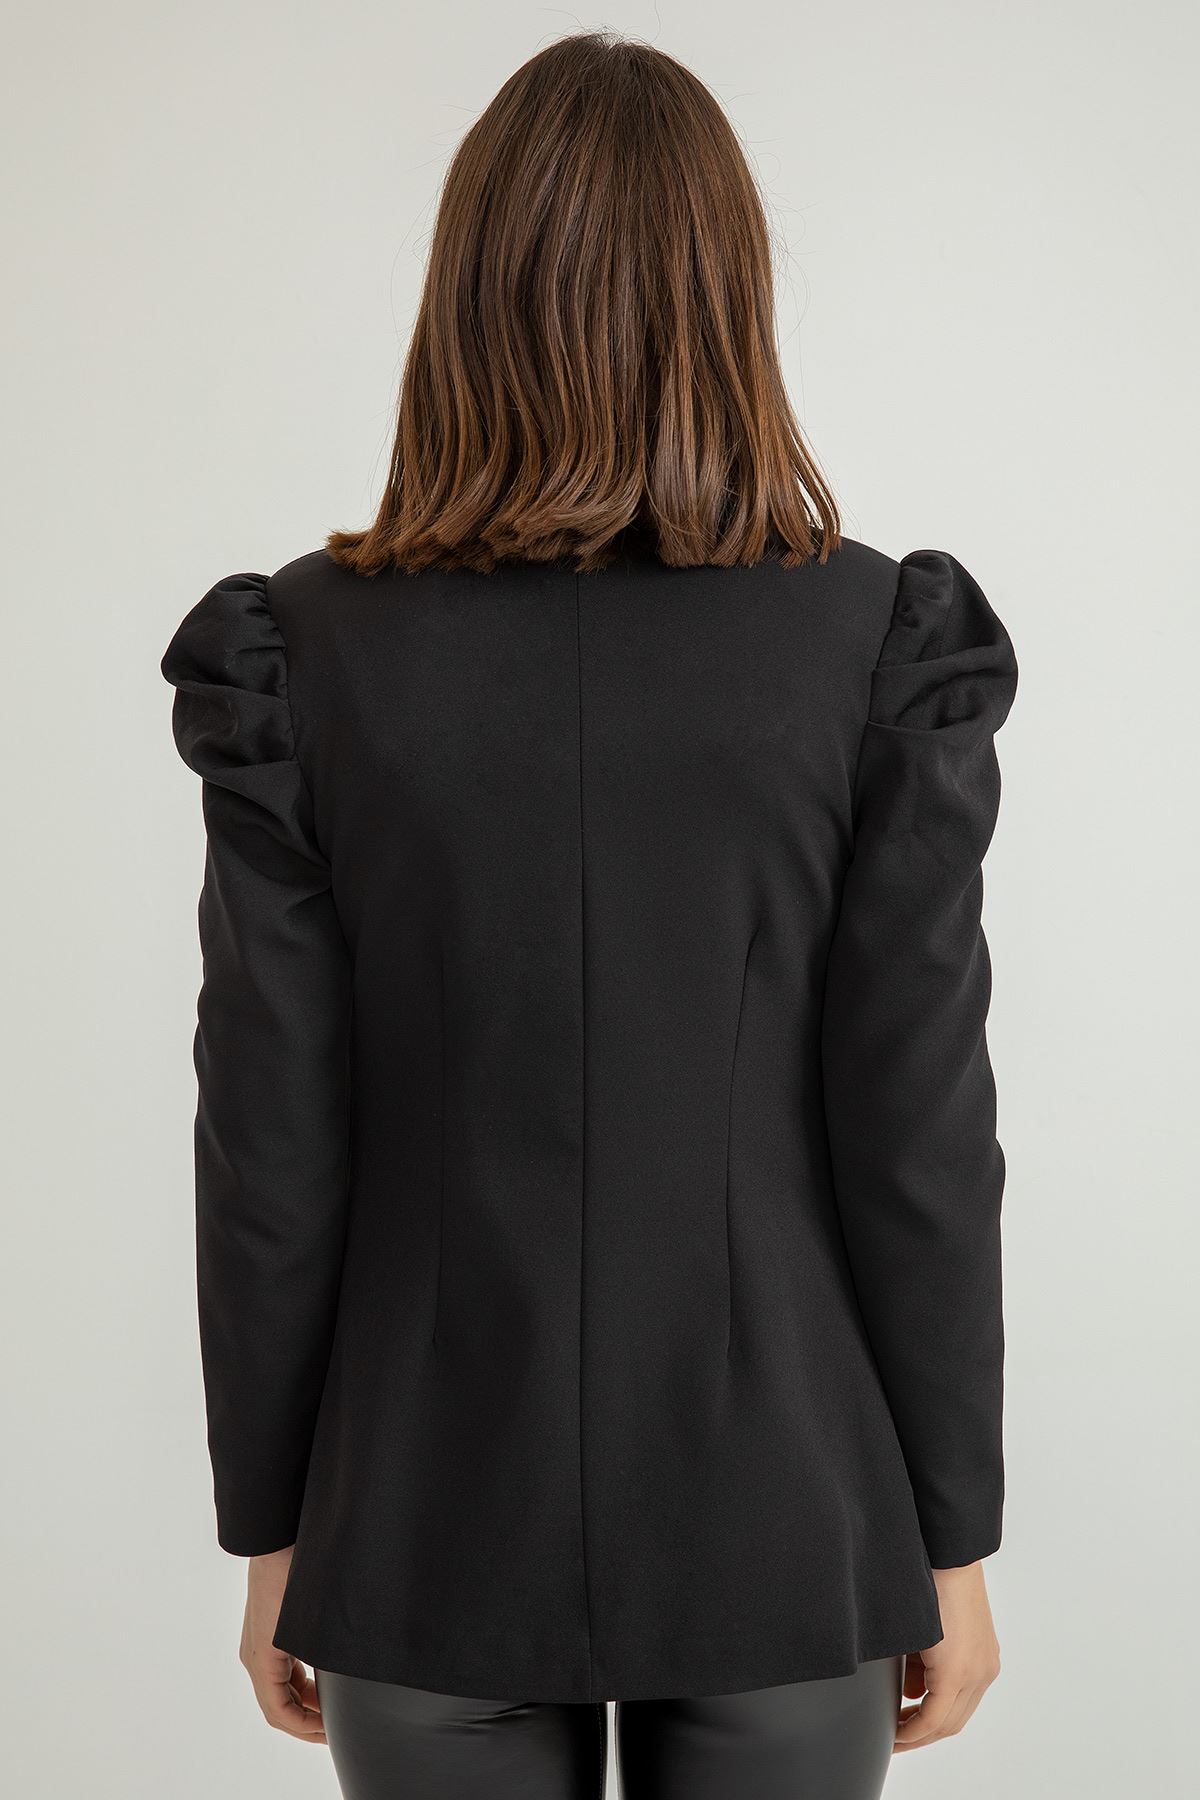 Atlas Kumaş Uzun Kol Şal Yaka Klasik Kalıp Büzgü Detay Kadın Ceket-Siyah